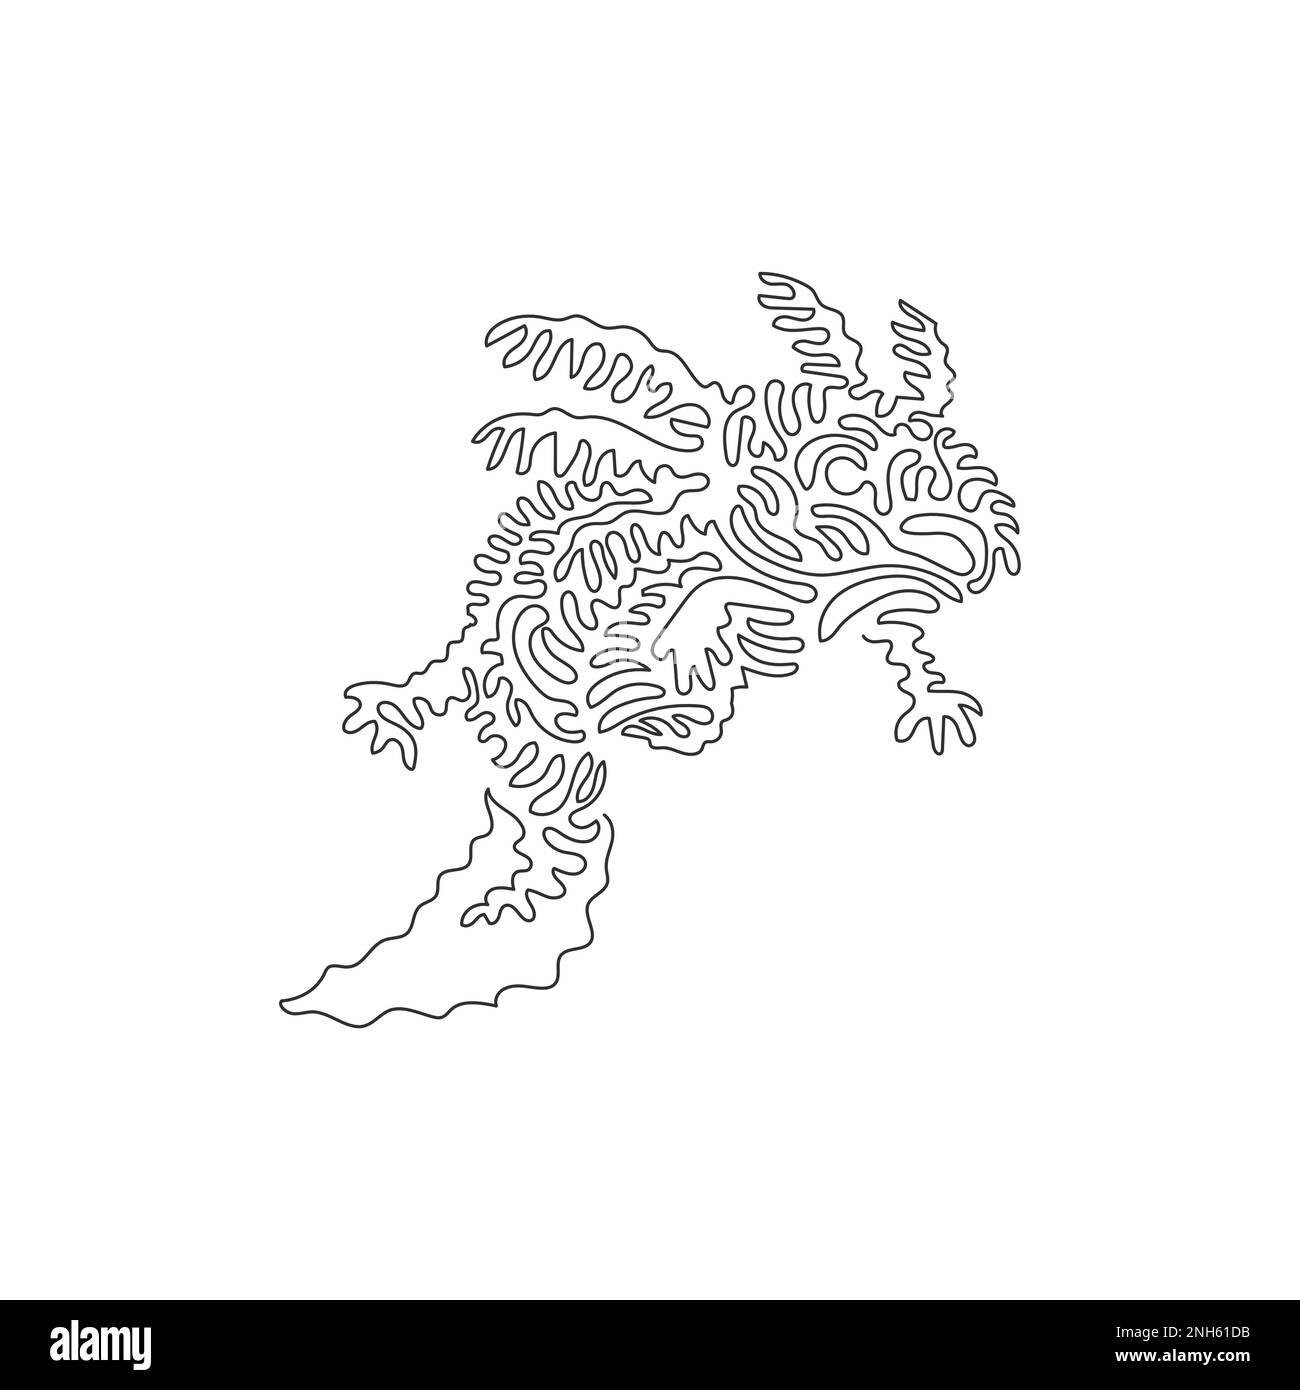 Un seul dessin d'une ligne de l'art abstrait axolotl mignon Dessin de ligne continue dessin graphique illustration vectorielle d'incroyables amphibiens marins pour icône Illustration de Vecteur